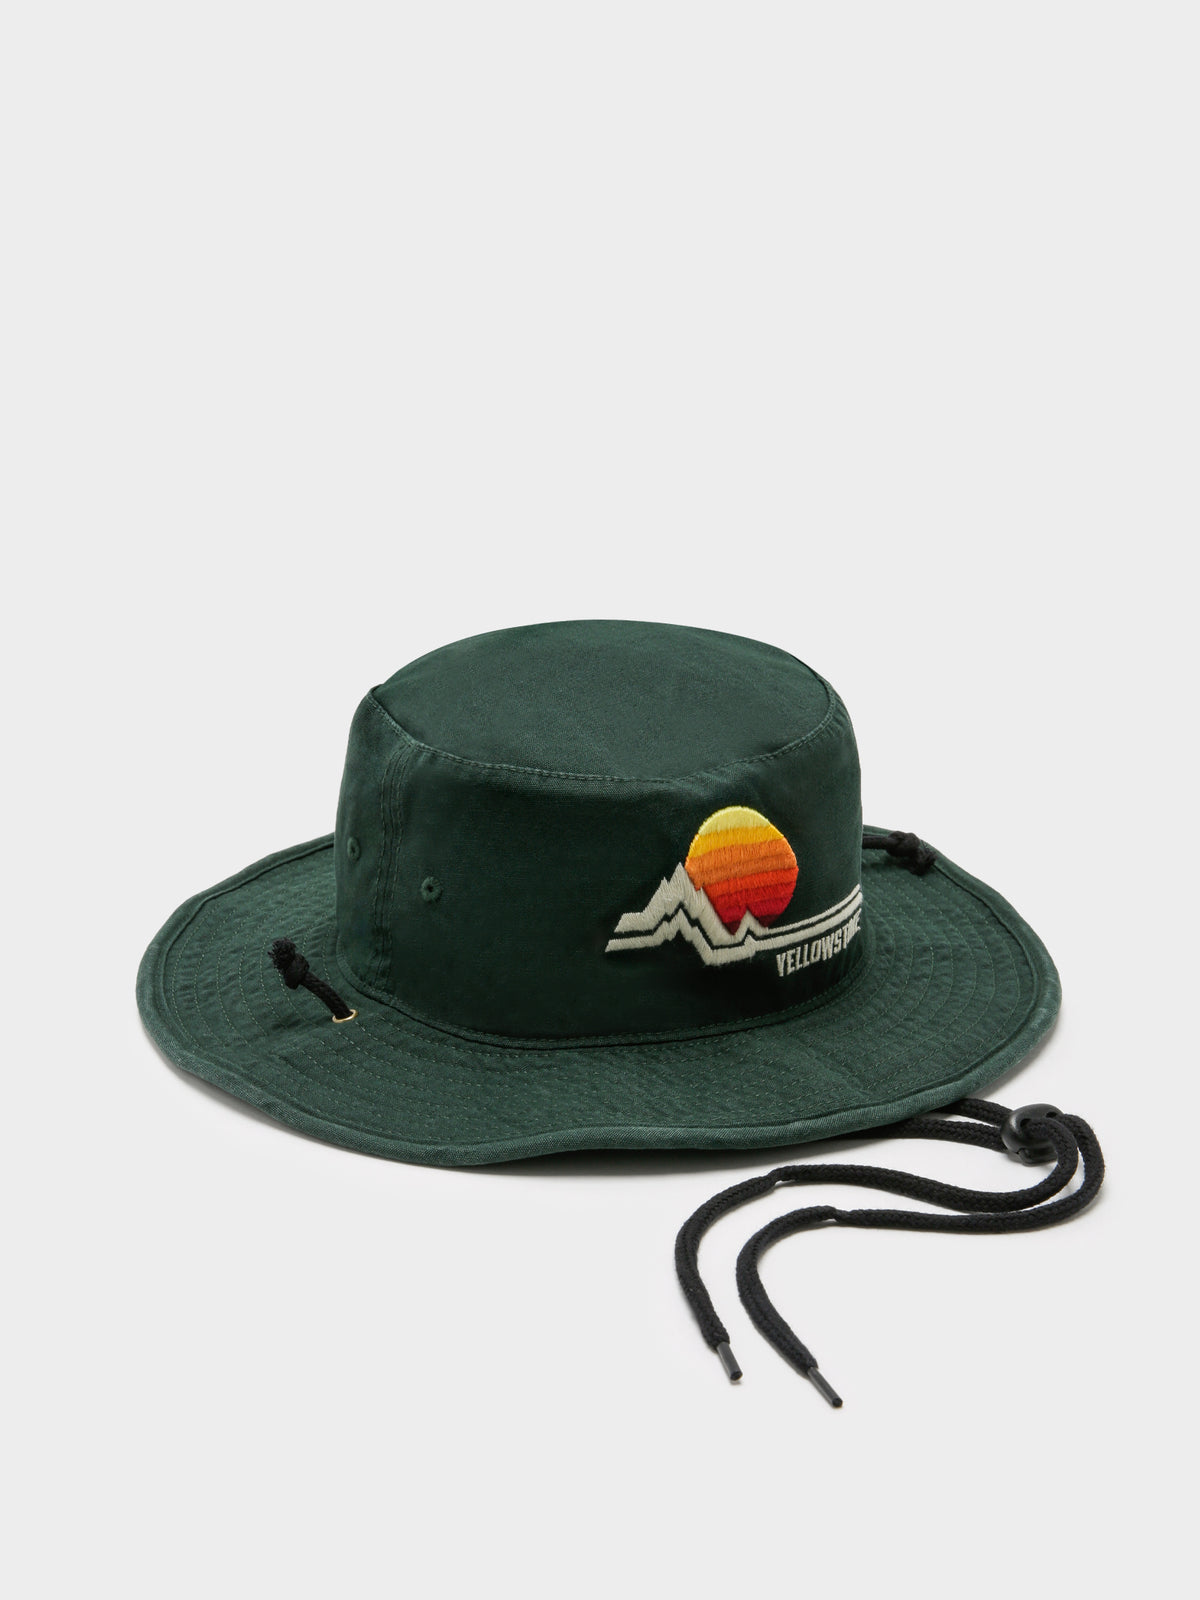 Yellowstone Wide Brimmed Bucket Hat in Dark Green